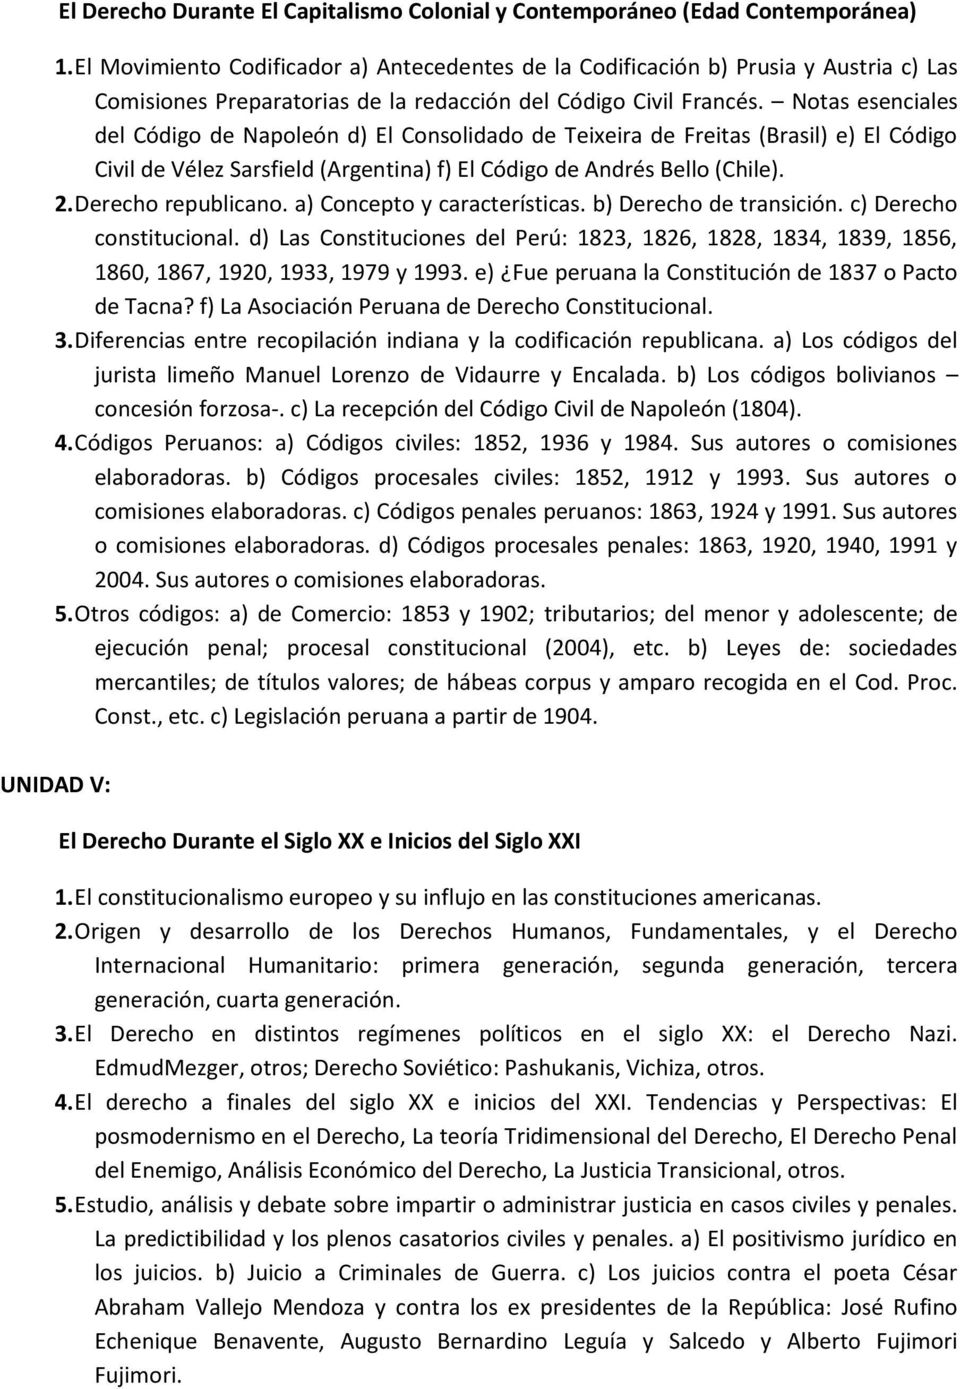 Notas esenciales del Código de Napoleón d) El Consolidado de Teixeira de Freitas (Brasil) e) El Código Civil de Vélez Sarsfield (Argentina) f) El Código de Andrés Bello (Chile). 2.